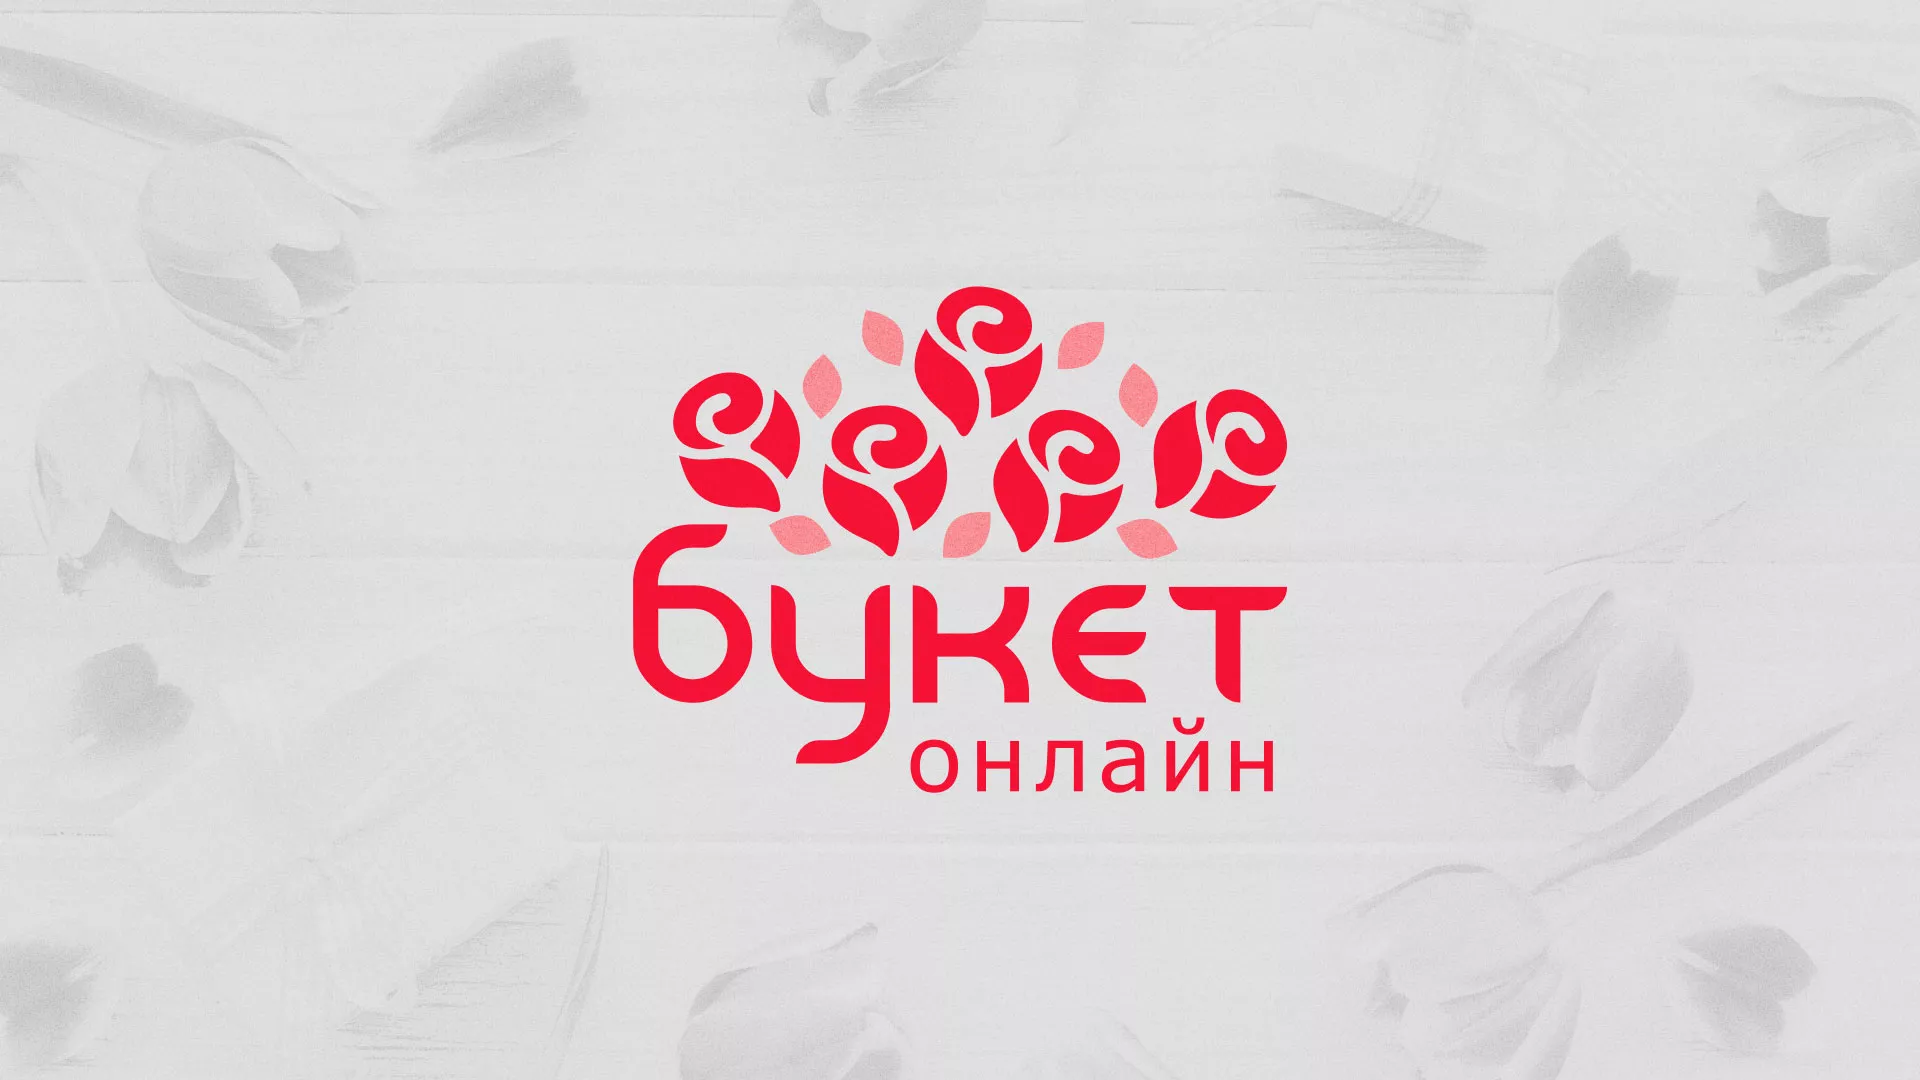 Создание интернет-магазина «Букет-онлайн» по цветам в Магнитогорске